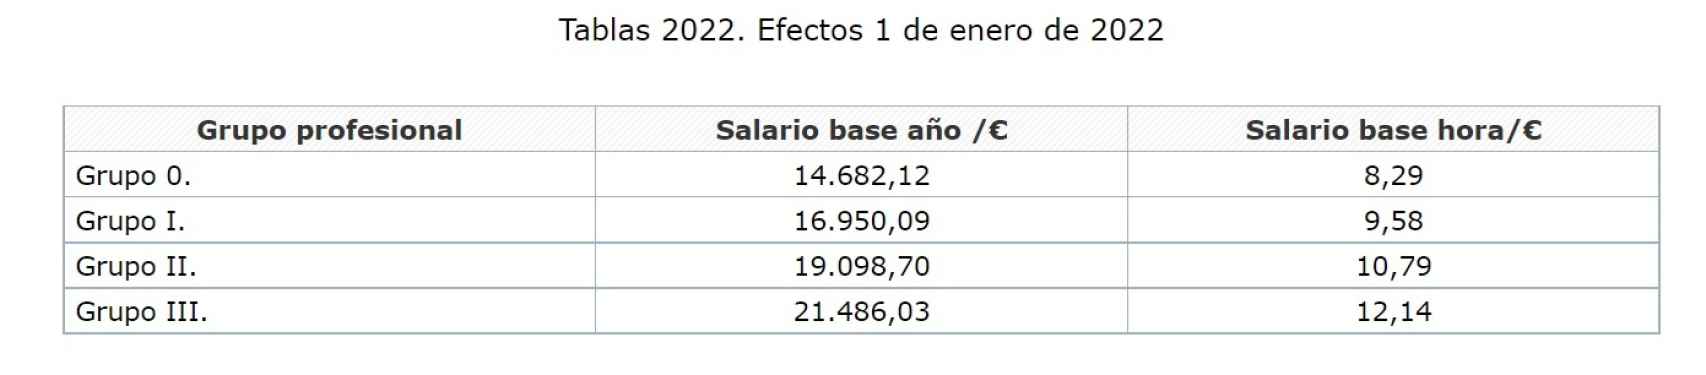 Tabla salarial de Primark en 2022. Fuente: BOE.